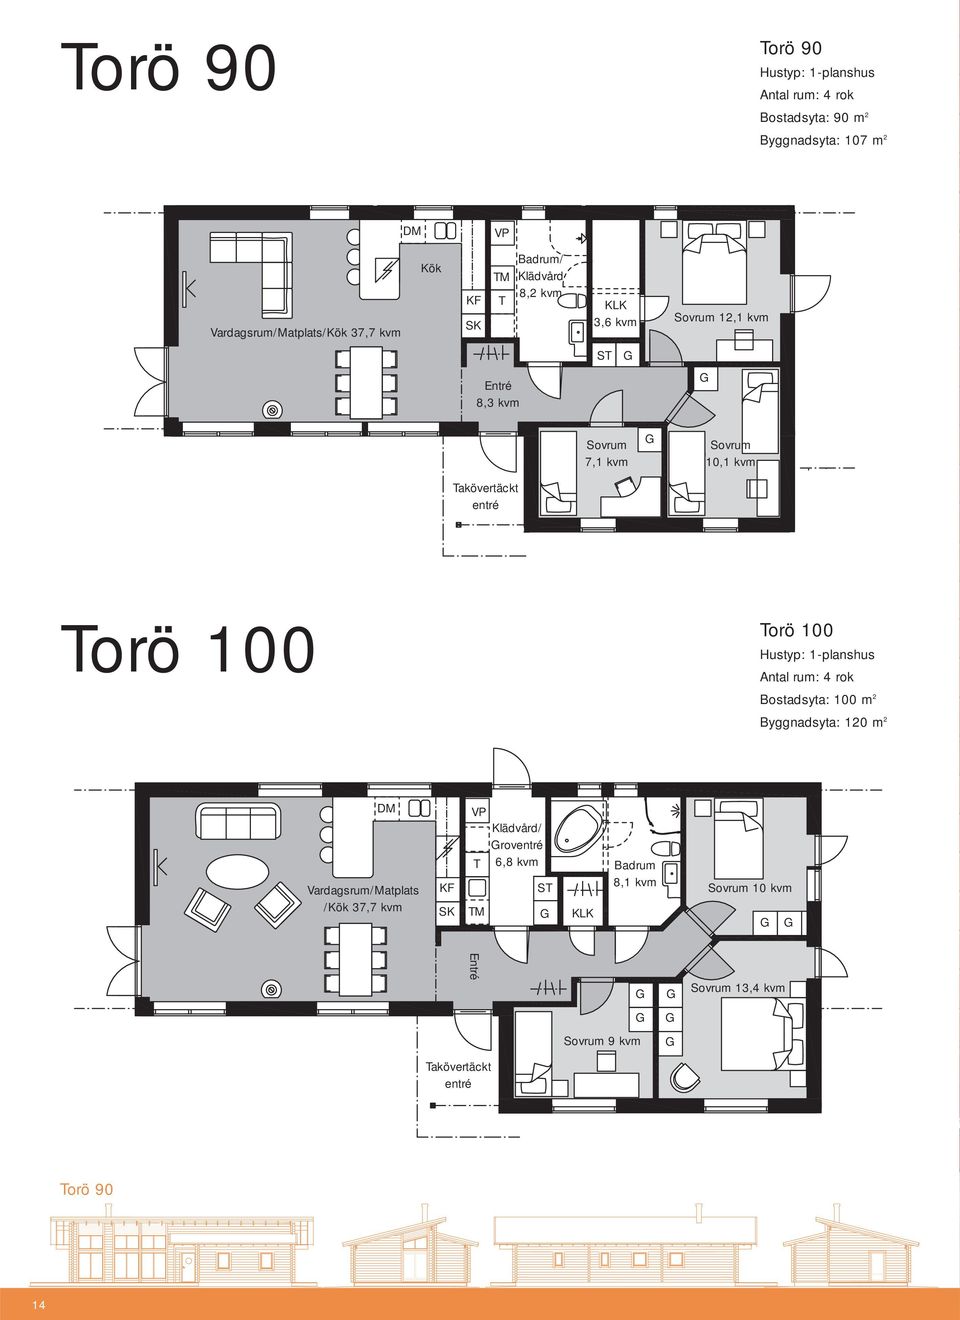 Torö 100 Torö 100 Hustyp: 1-planshus Antal rum: 4 rok Bostadsyta: 100 m 2 Byggnadsyta: 120 m 2 DM Vardagsrum/Matplats /Kök